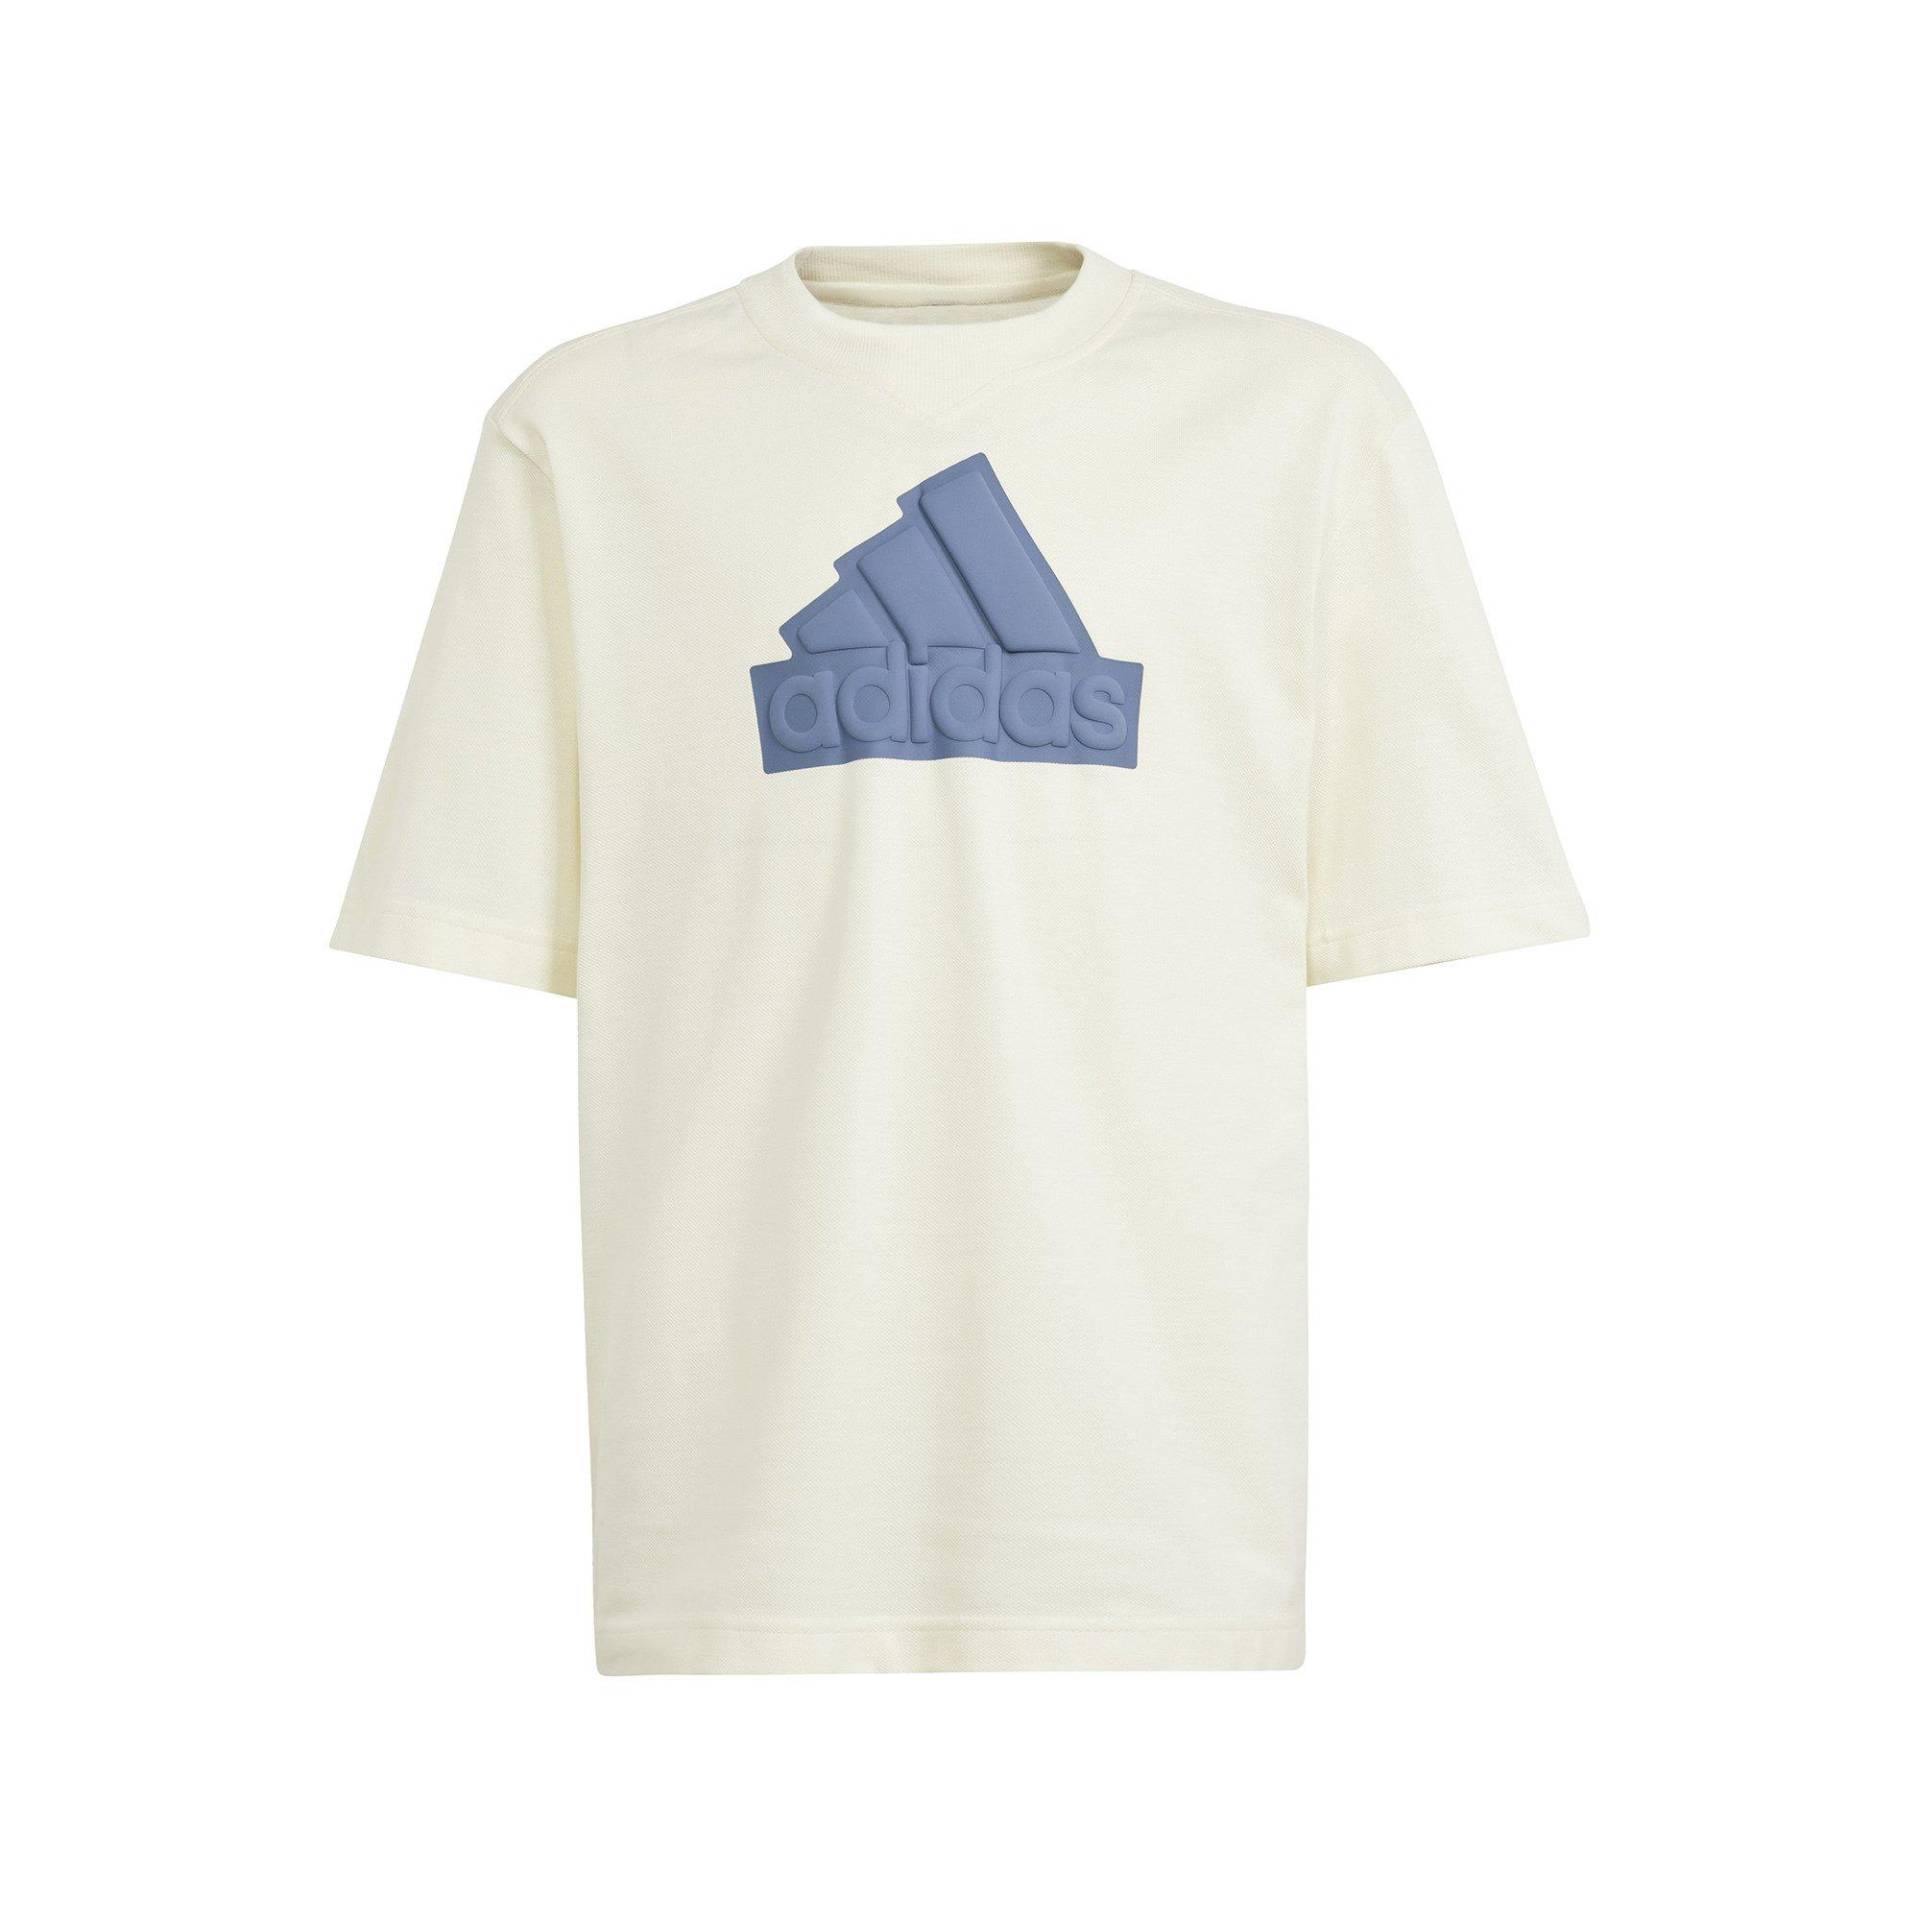 adidas T-shirt, Rundhals, Kurzarm Jungen Sand 128 von Adidas